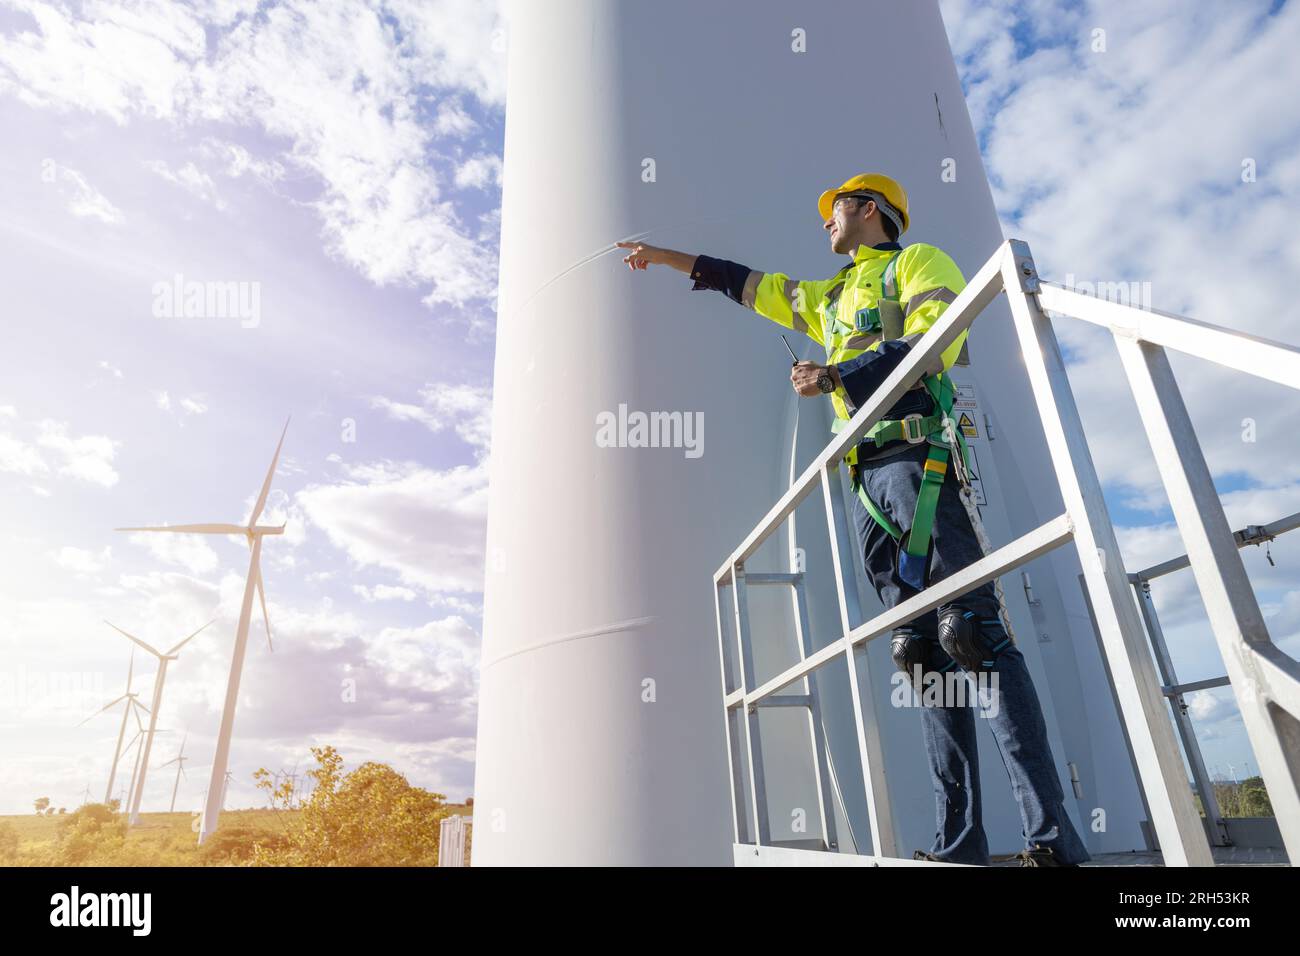 Manutenzione di controllo da parte del tecnico della turbina eolica. Team di ingegneri, manutenzione professionale, sistema di generazione pulita Foto Stock